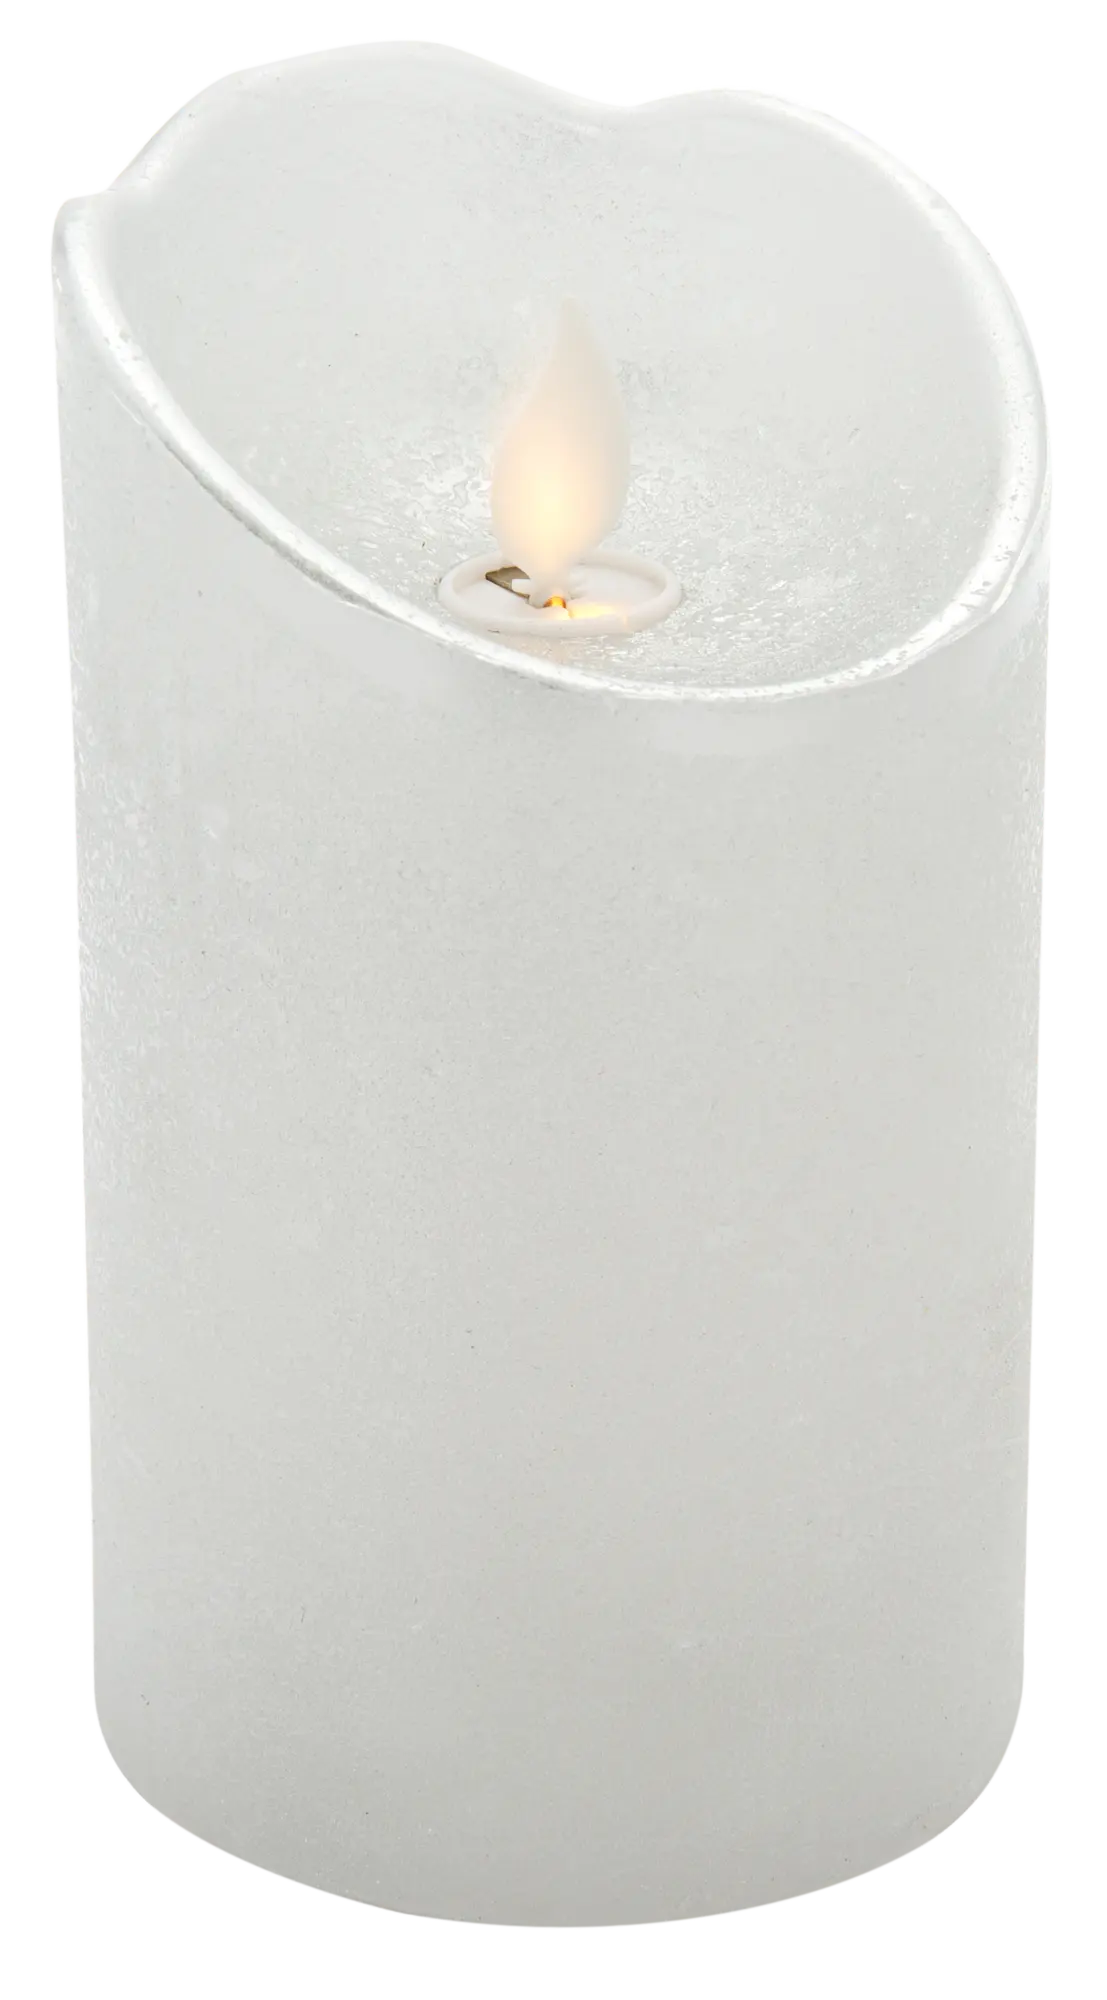 12 velas LED recargables efecto llama con base de carga ideal para